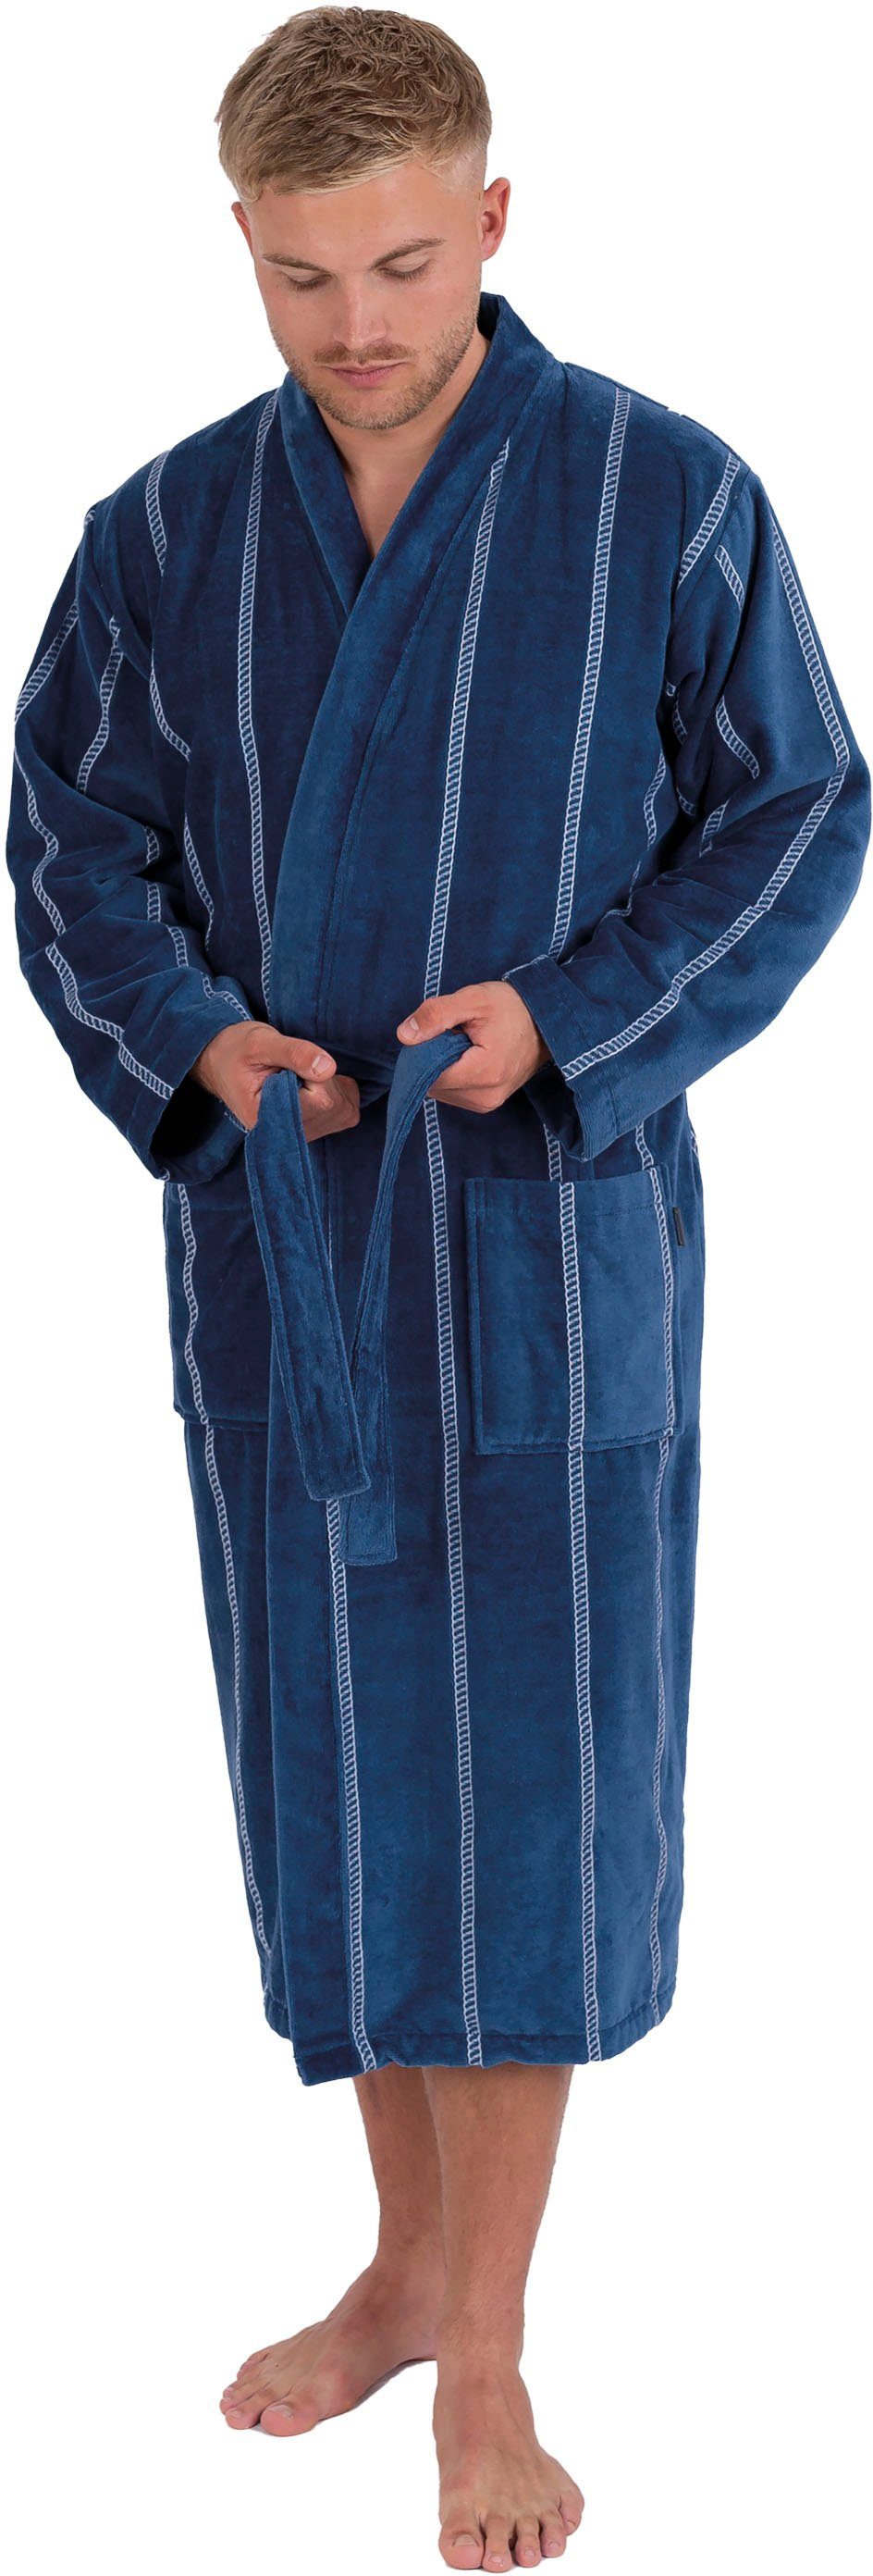 Wewo Kimono-Kragen, 1607, Baumwolle, Kimono-Kragen, mit Herrenbademantel dunkelblau lang Langform, gestreift, Gürtel, fashion